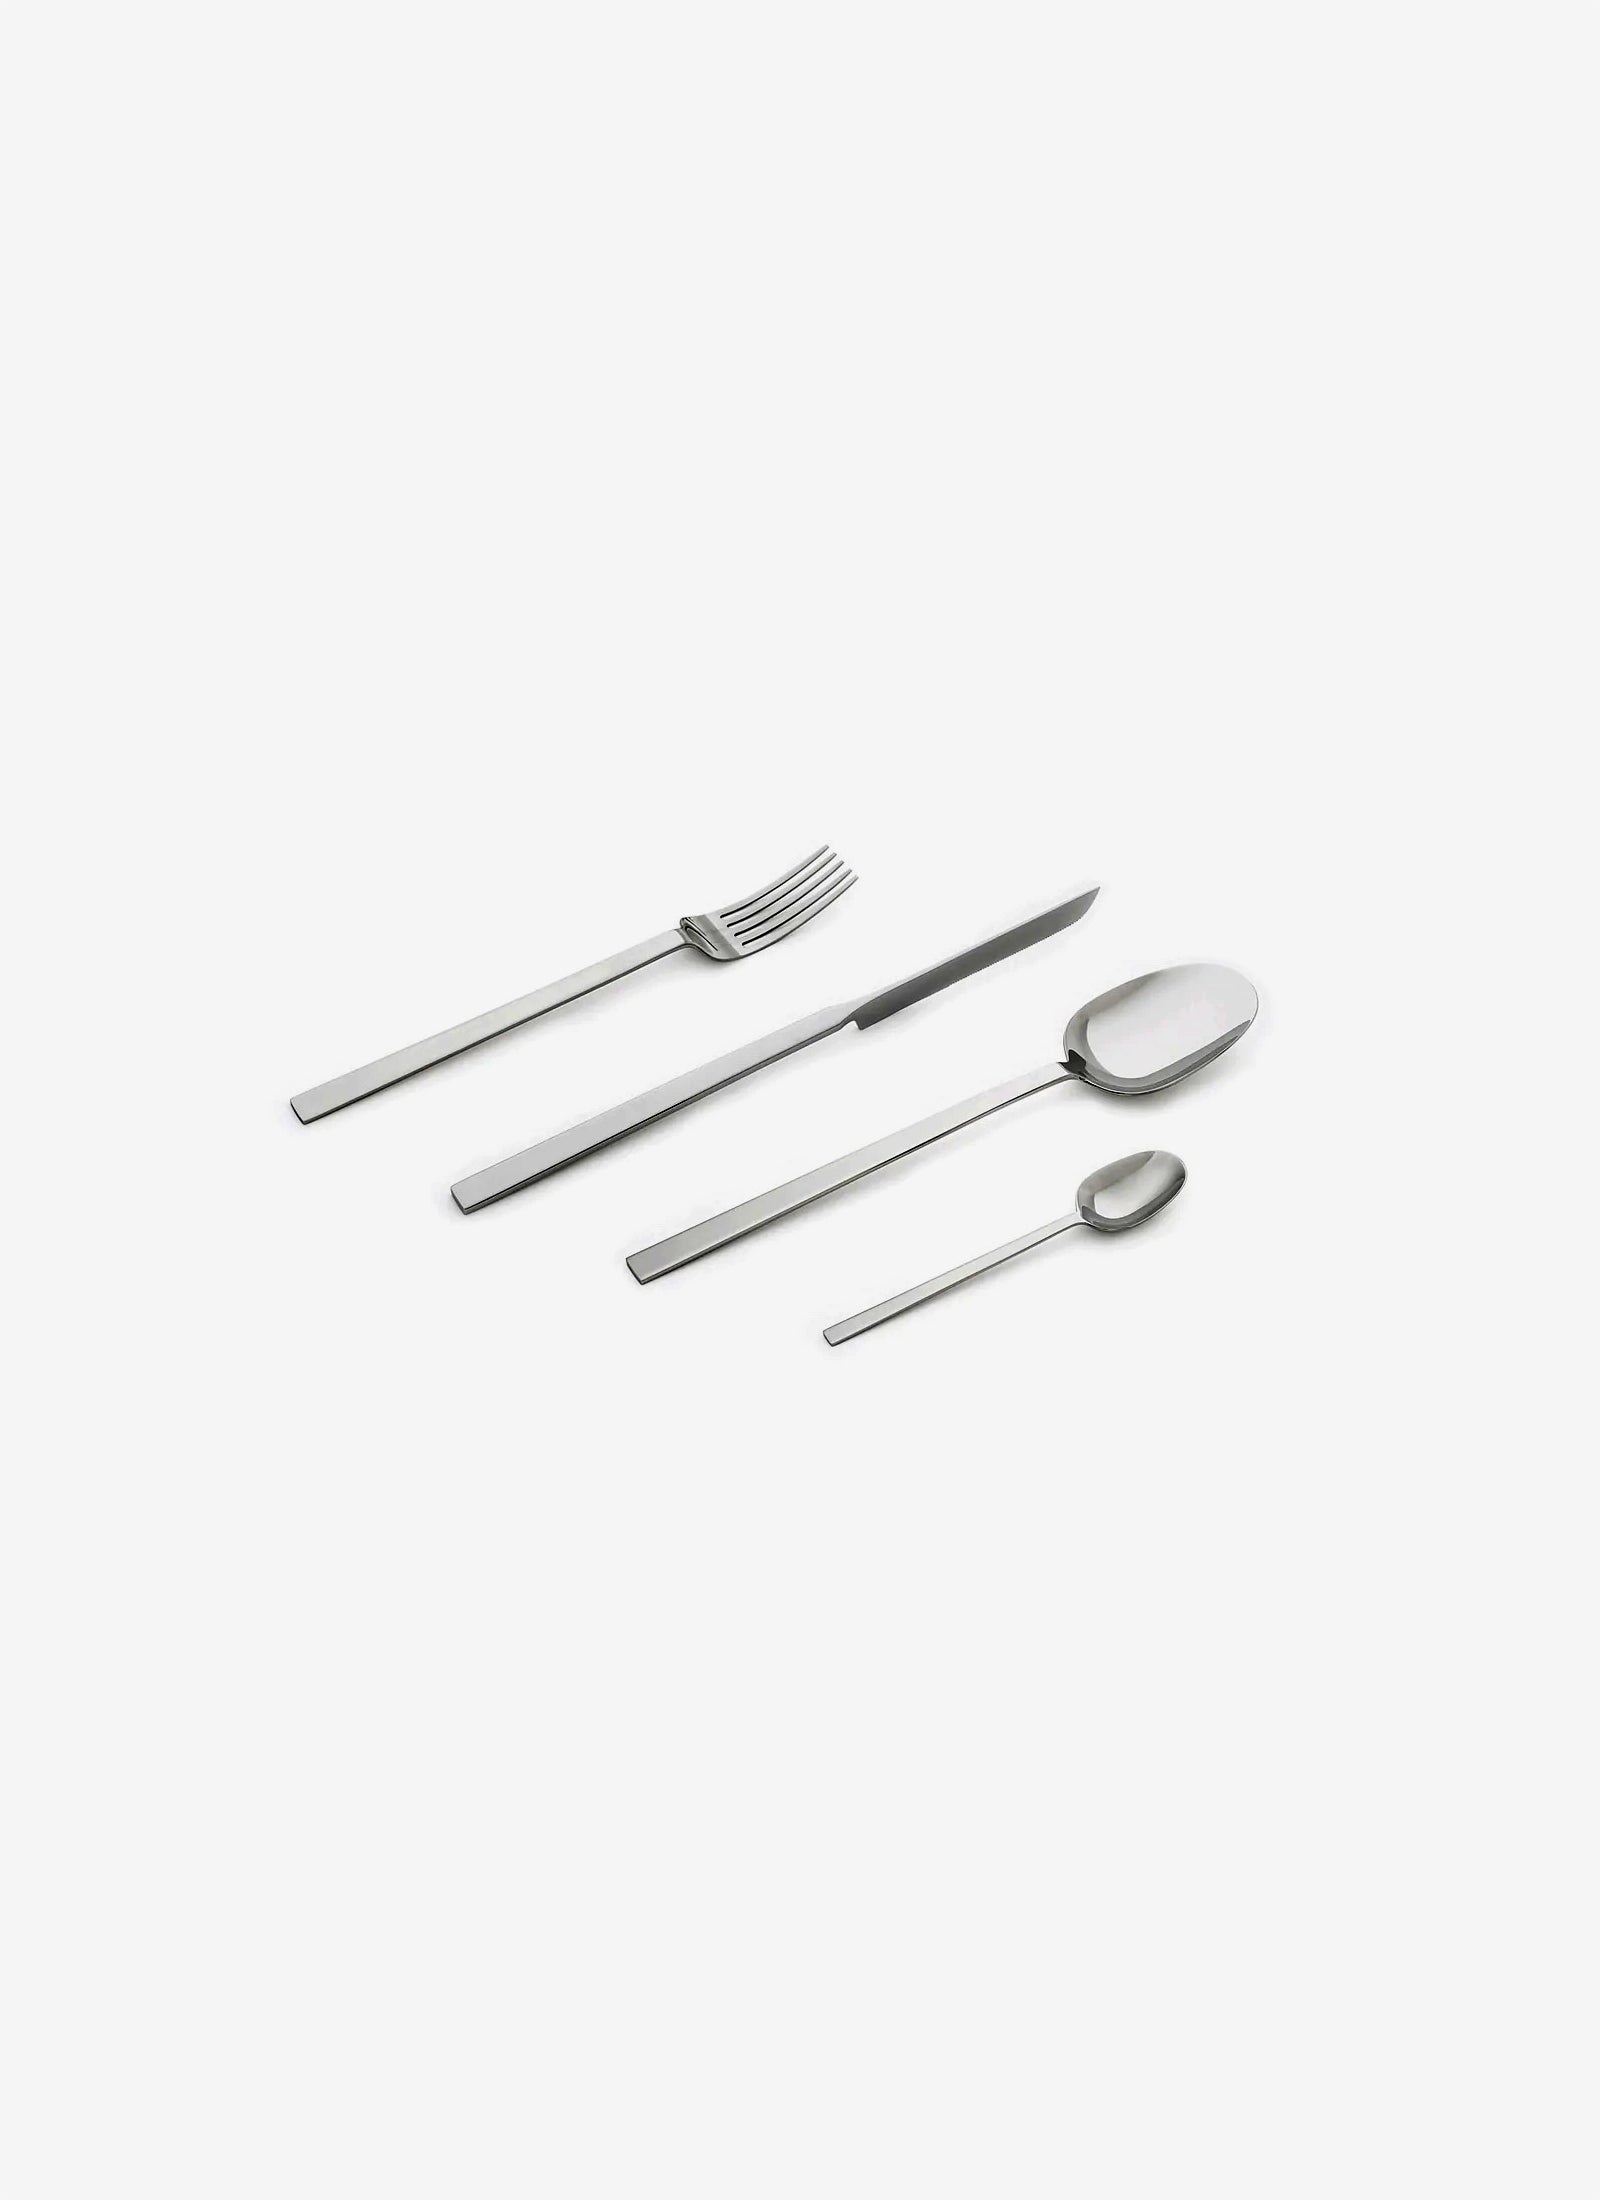 Cutlery Set by John Pawson